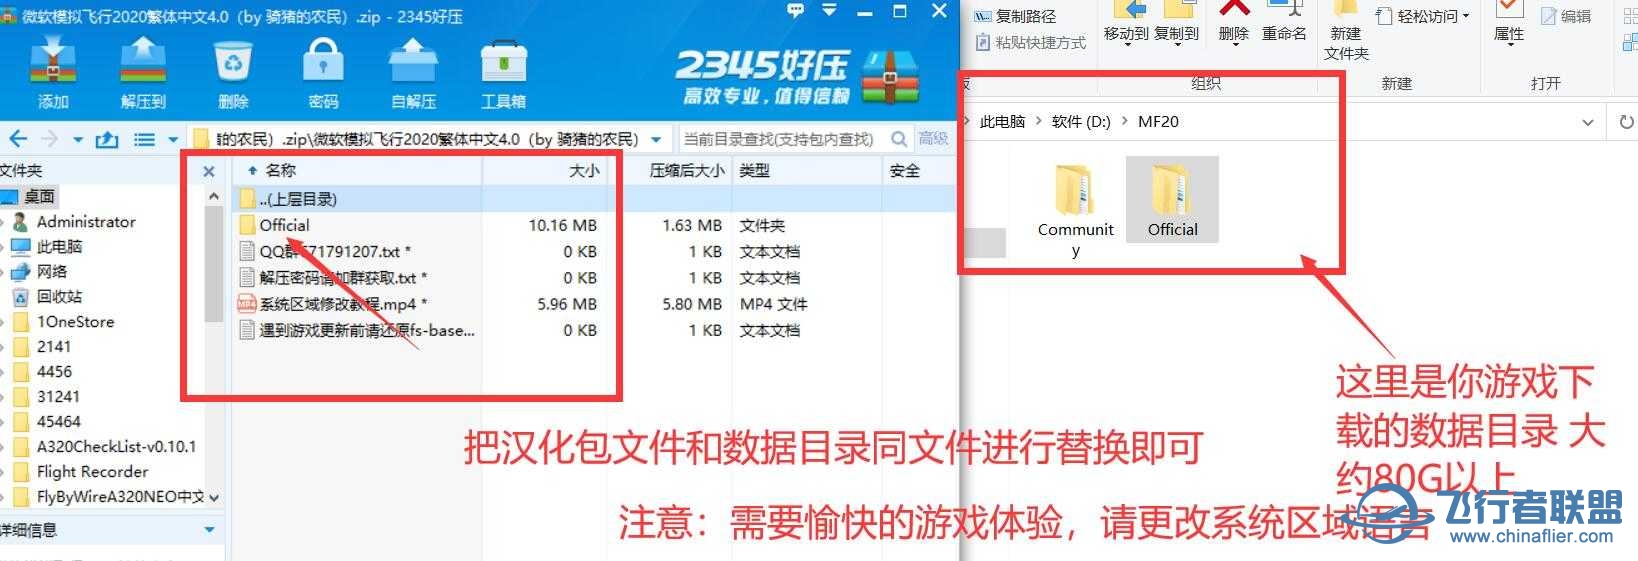 微软模拟飞行2020 1.18.14 繁体中文4.0发布版-6519 